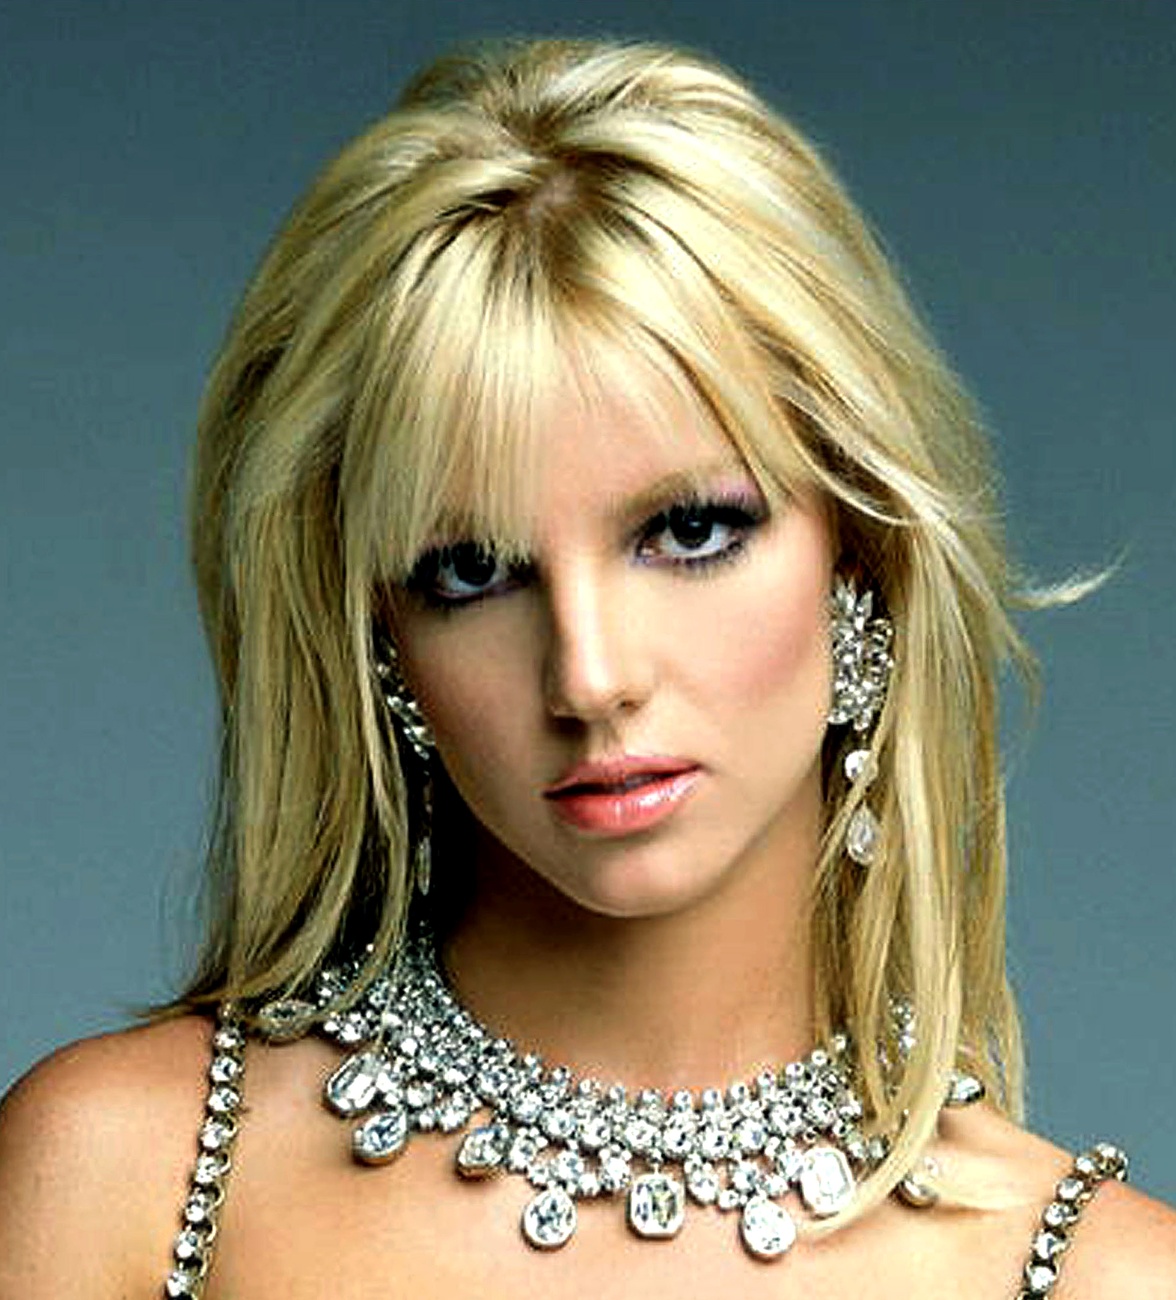 Britney no da el nombre de la otra mujer